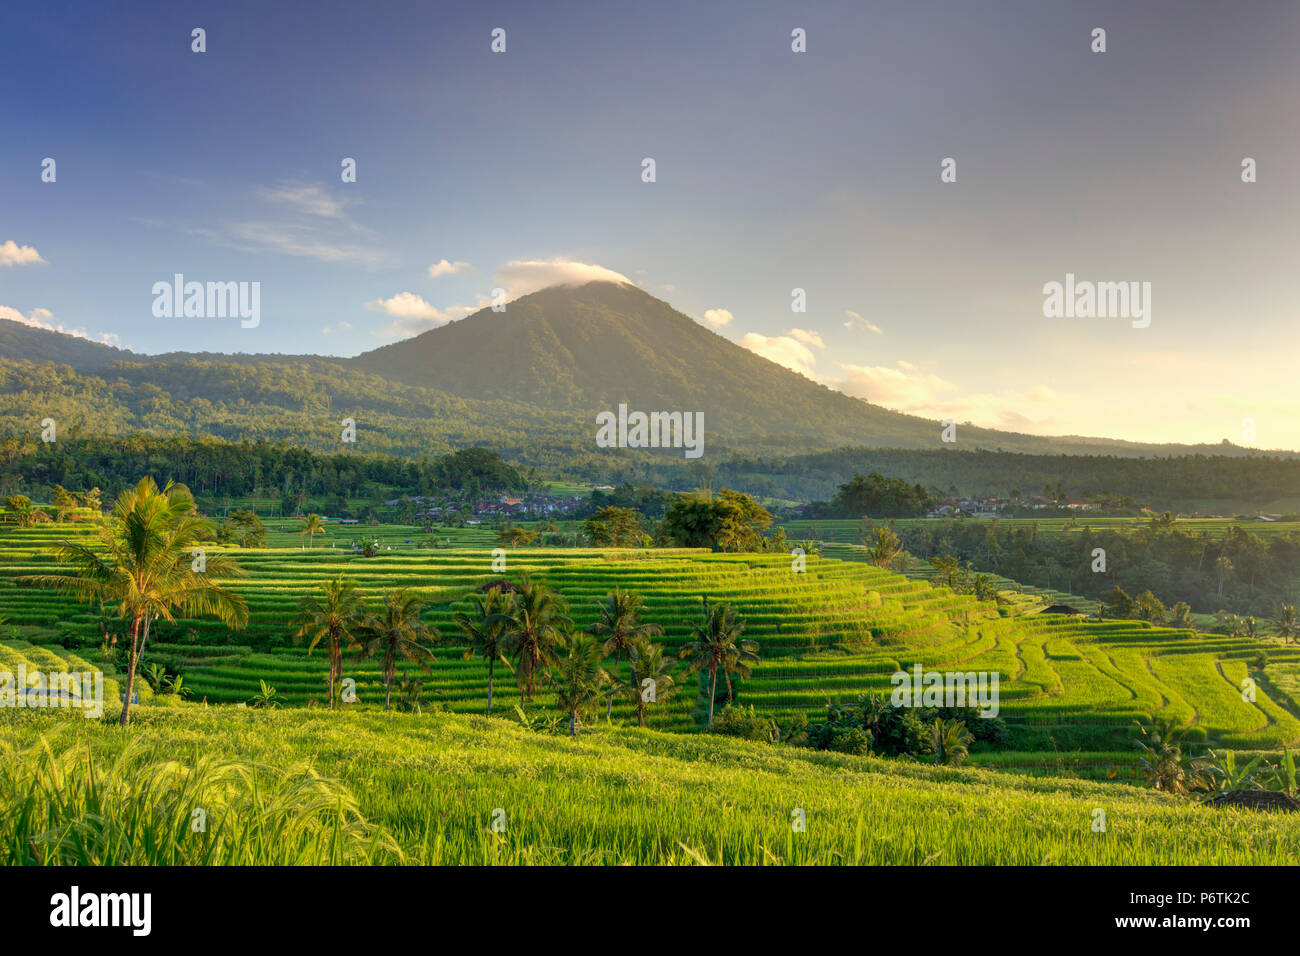 Indonesia, Bali, centrale Monti, Jatiluwih campi di riso (Sito UNESCO) con Mt. Pohen in background Foto Stock